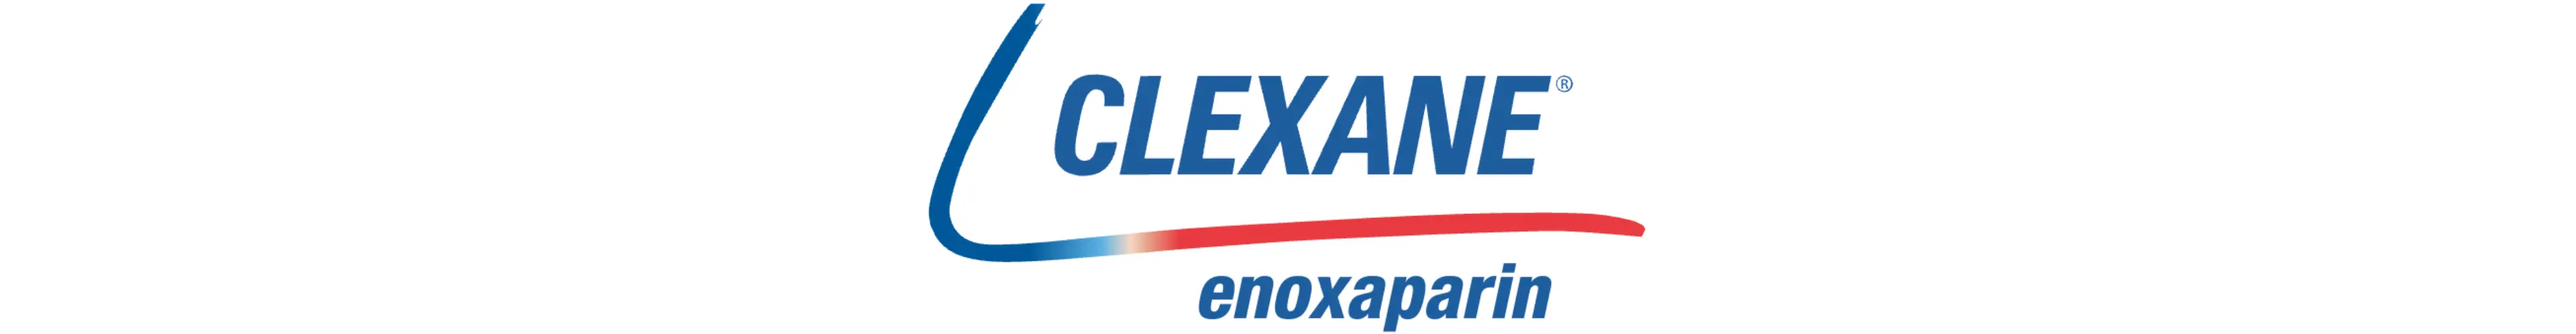 Clexane logo